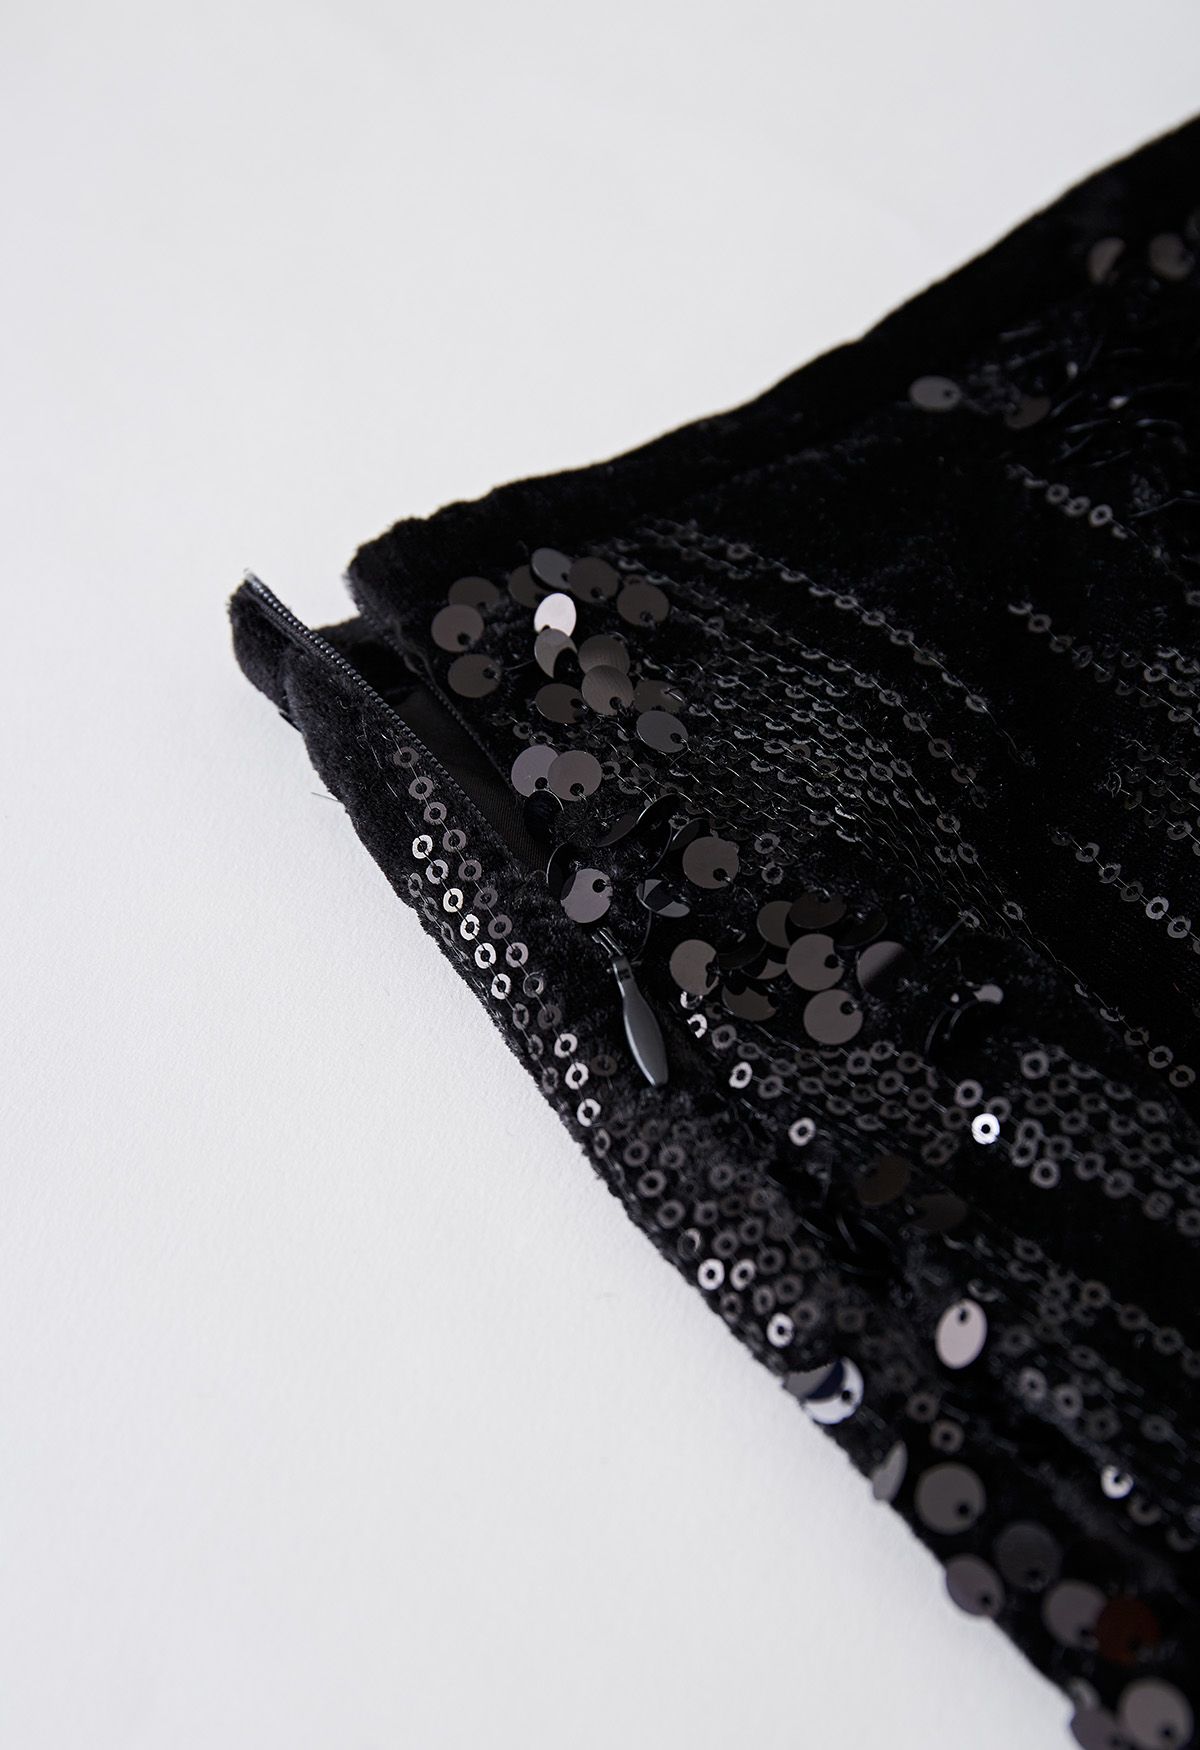 Velvet Sequins Embellished Pencil Skirt in Black